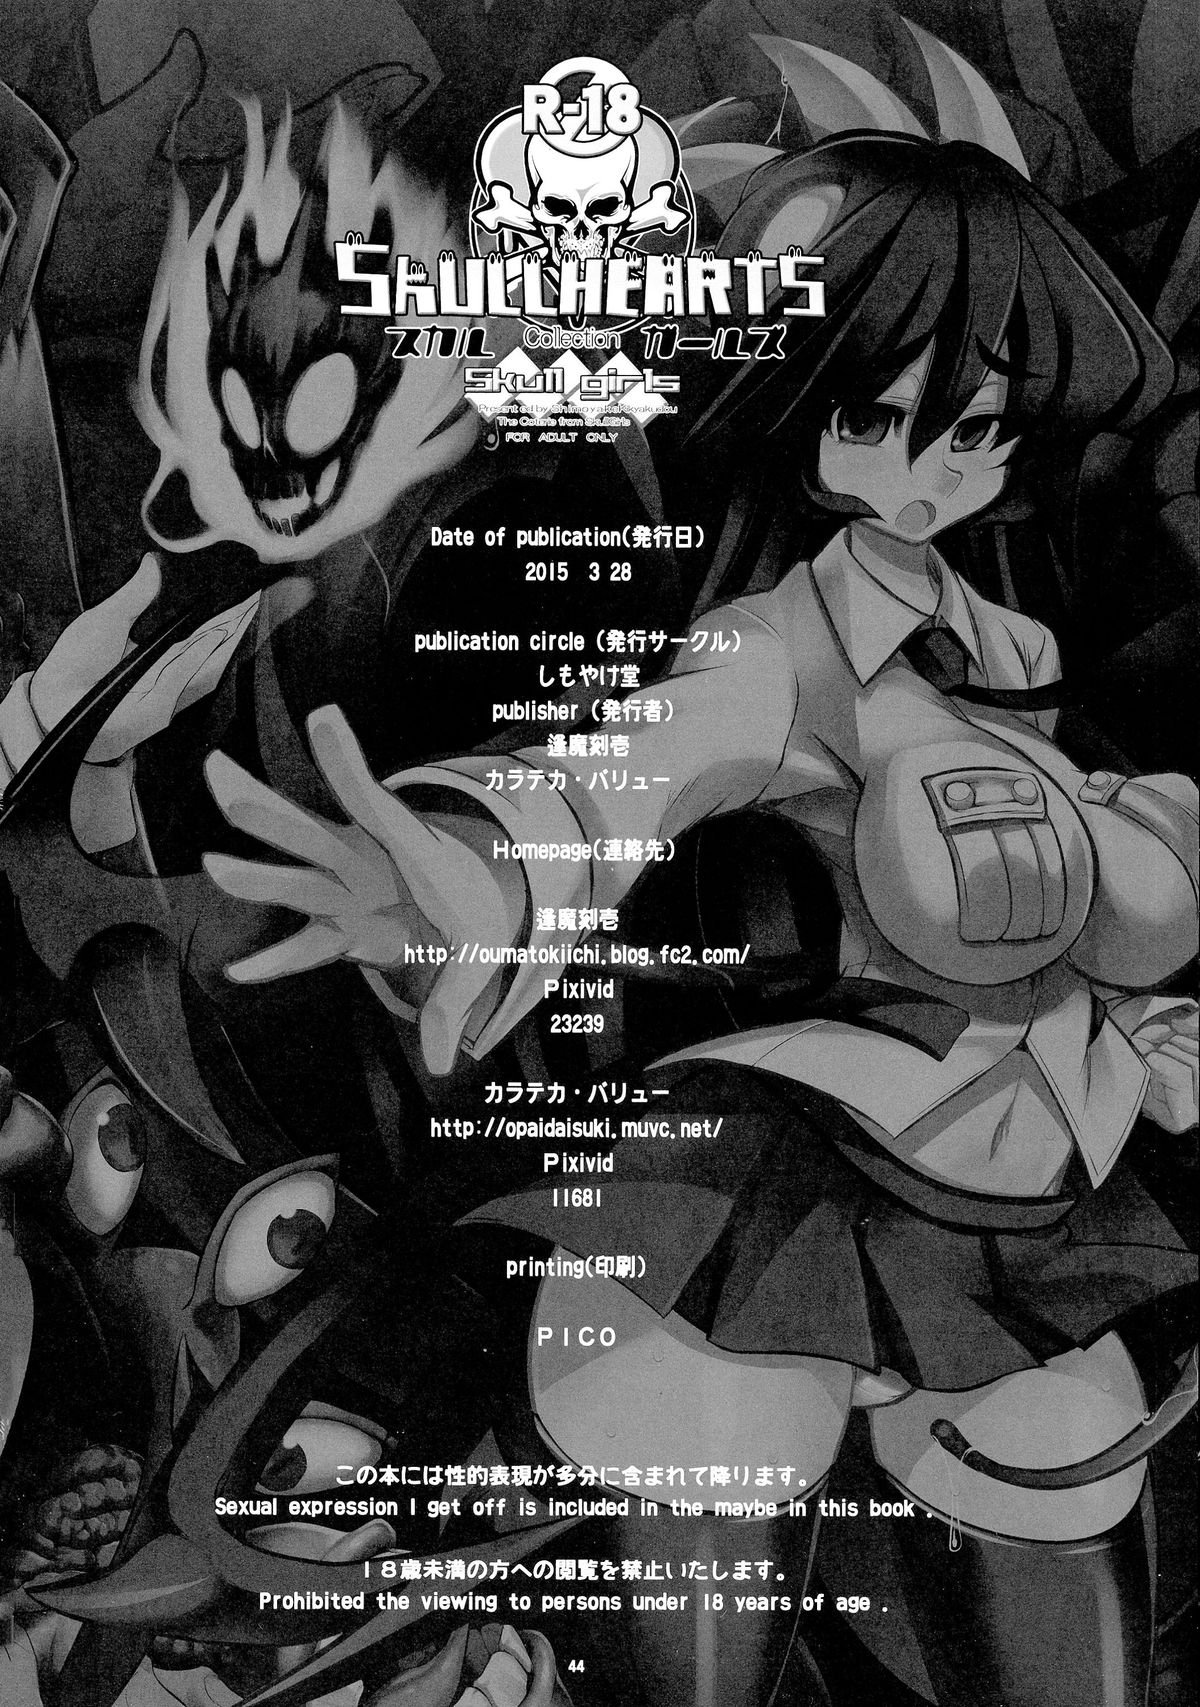 (CSP6) [Shimoyakedou (Various)] SKULLHEARTS (SKULLGIRLS) page 45 full